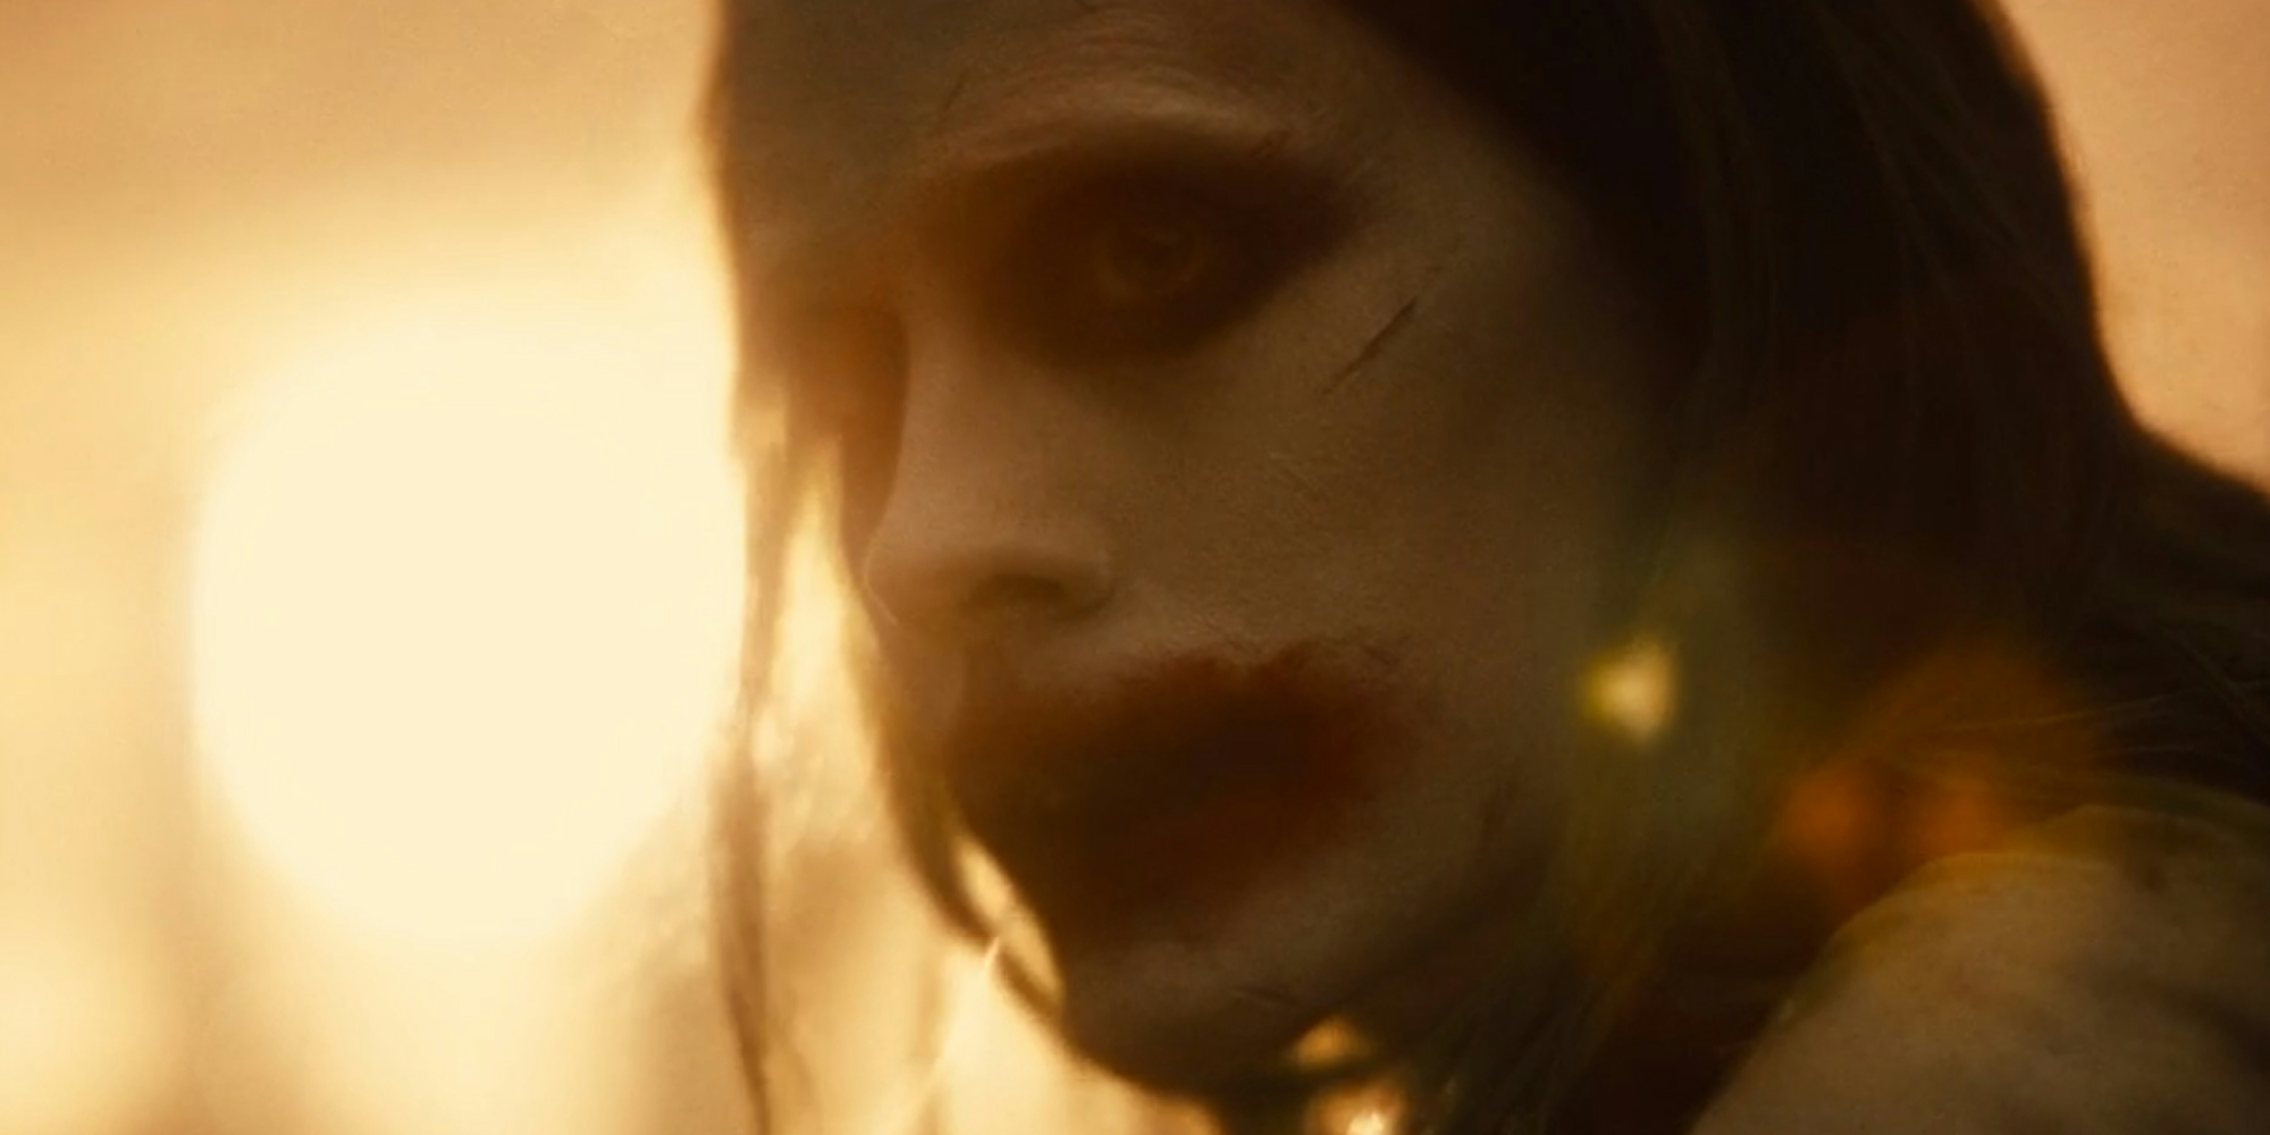 Jared Leto as the Joker